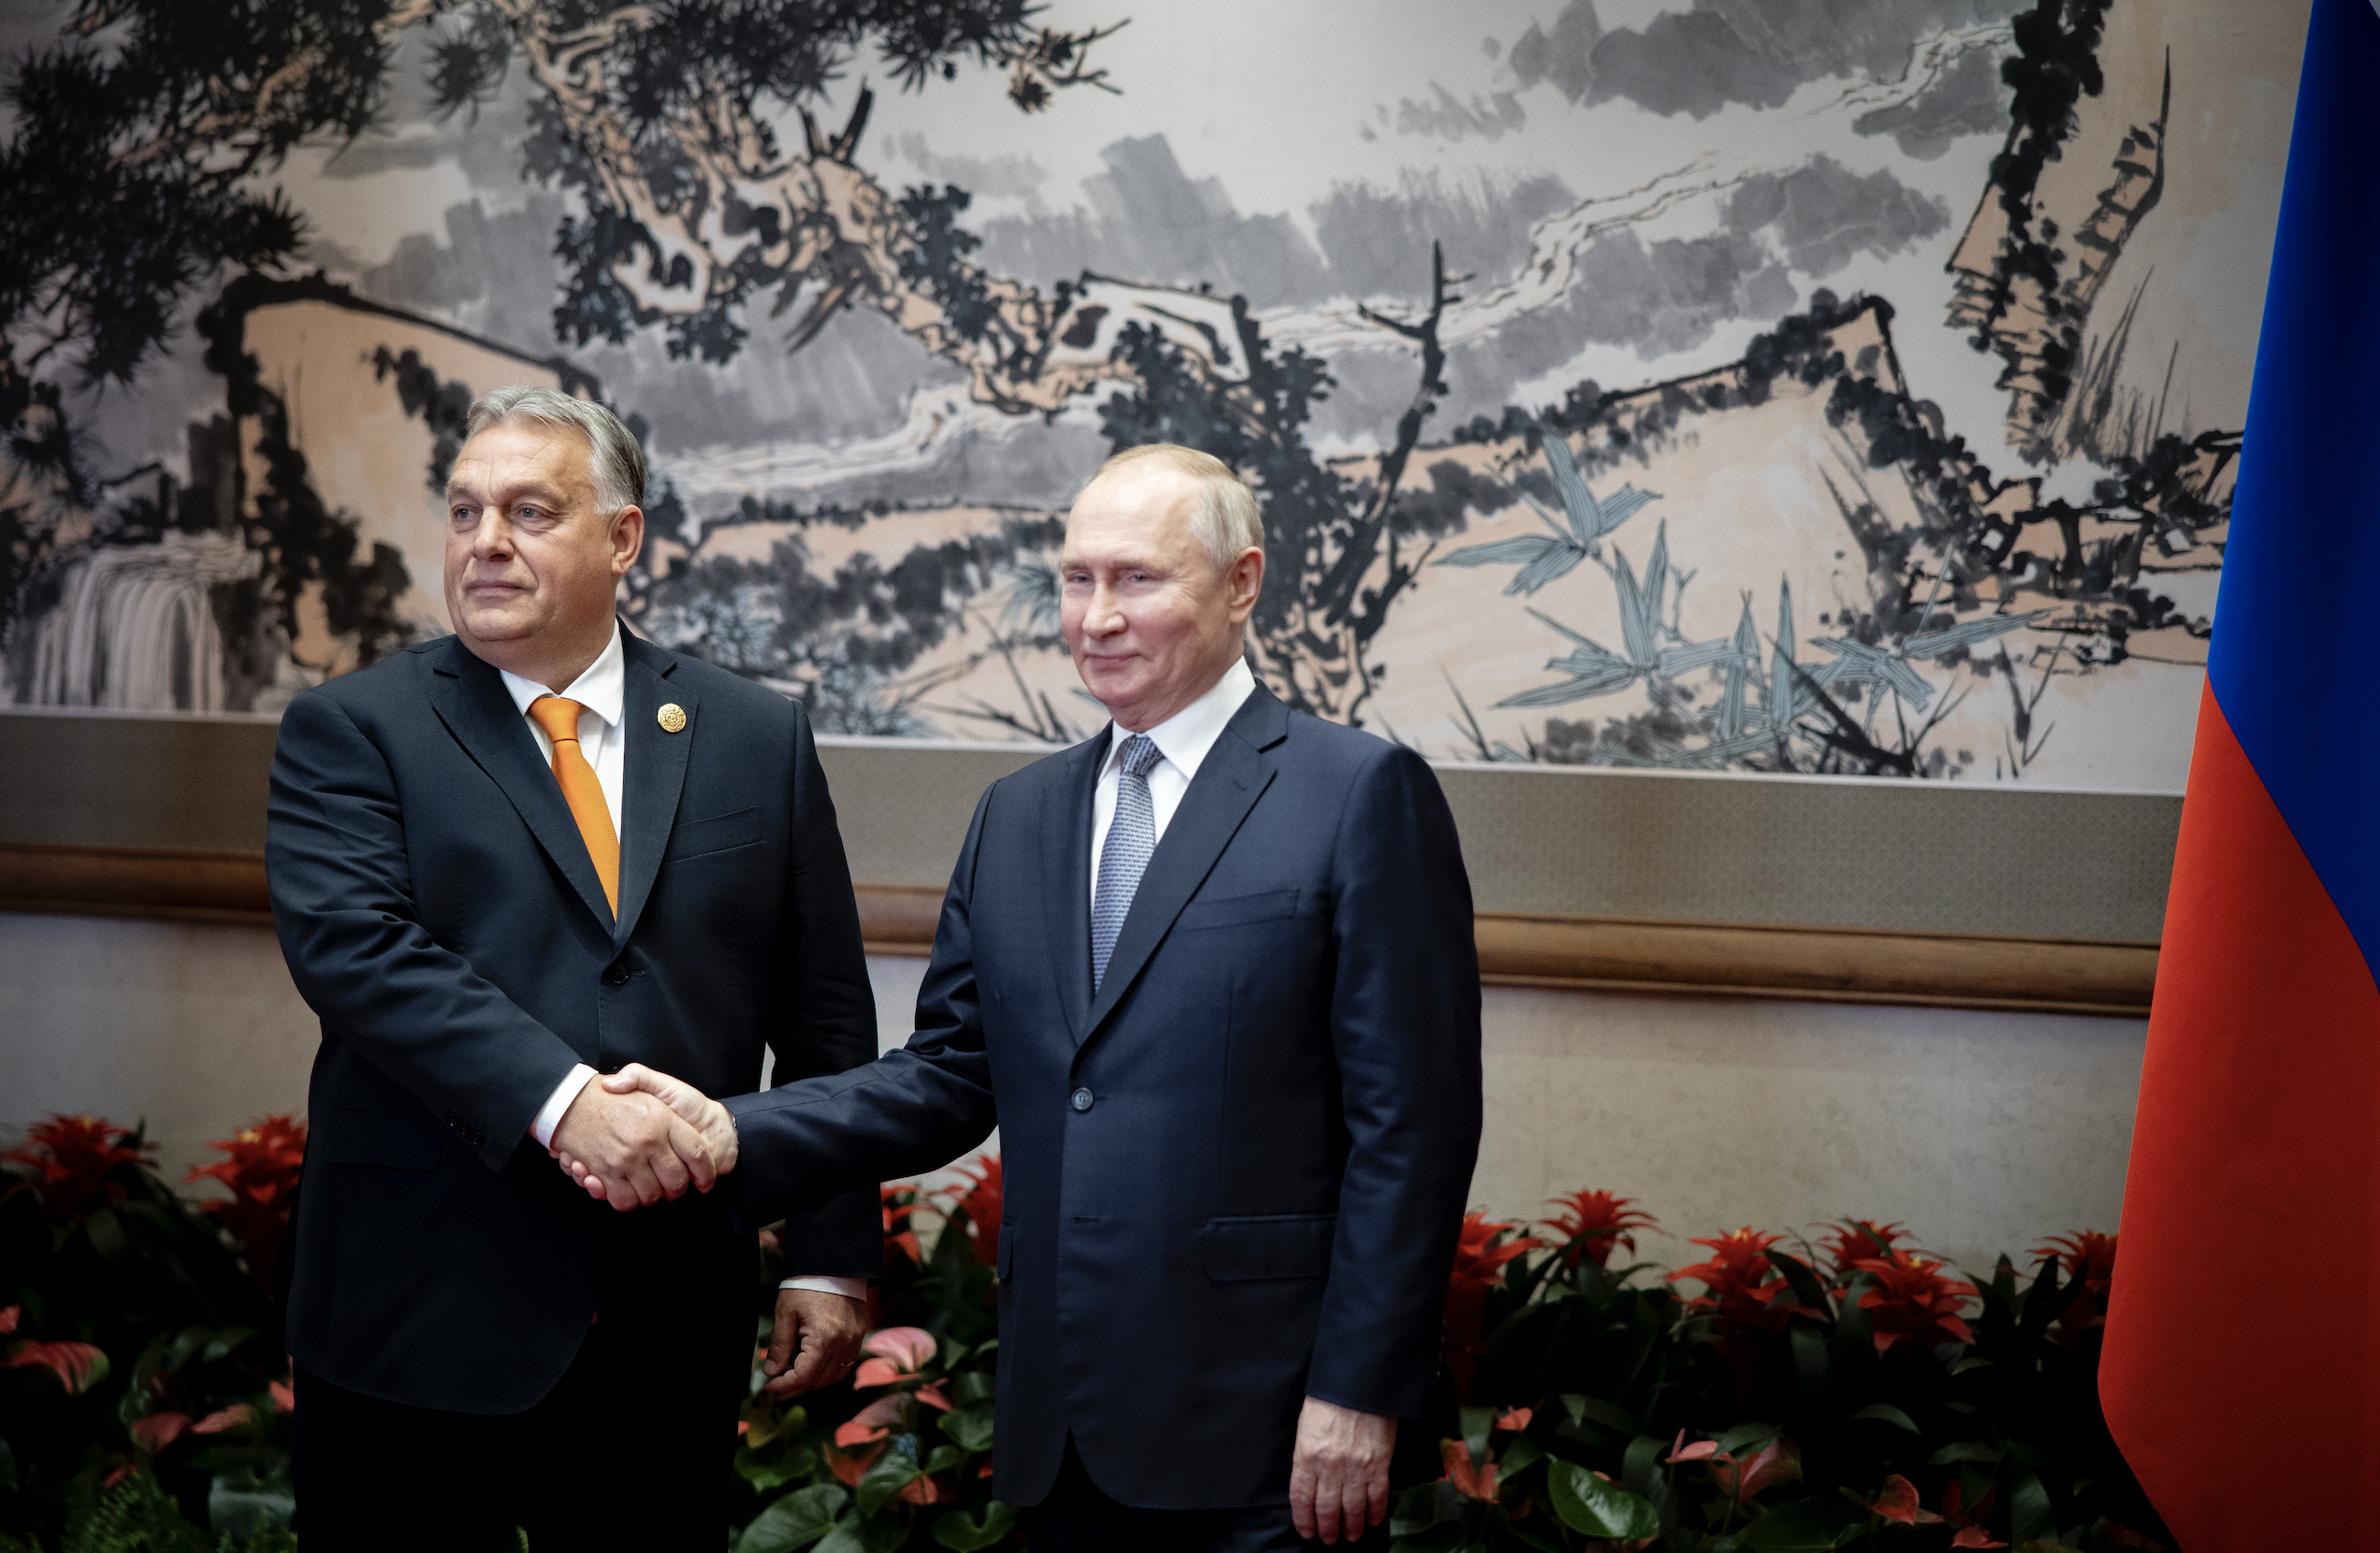 Orbán Meets With Putin in Beijing